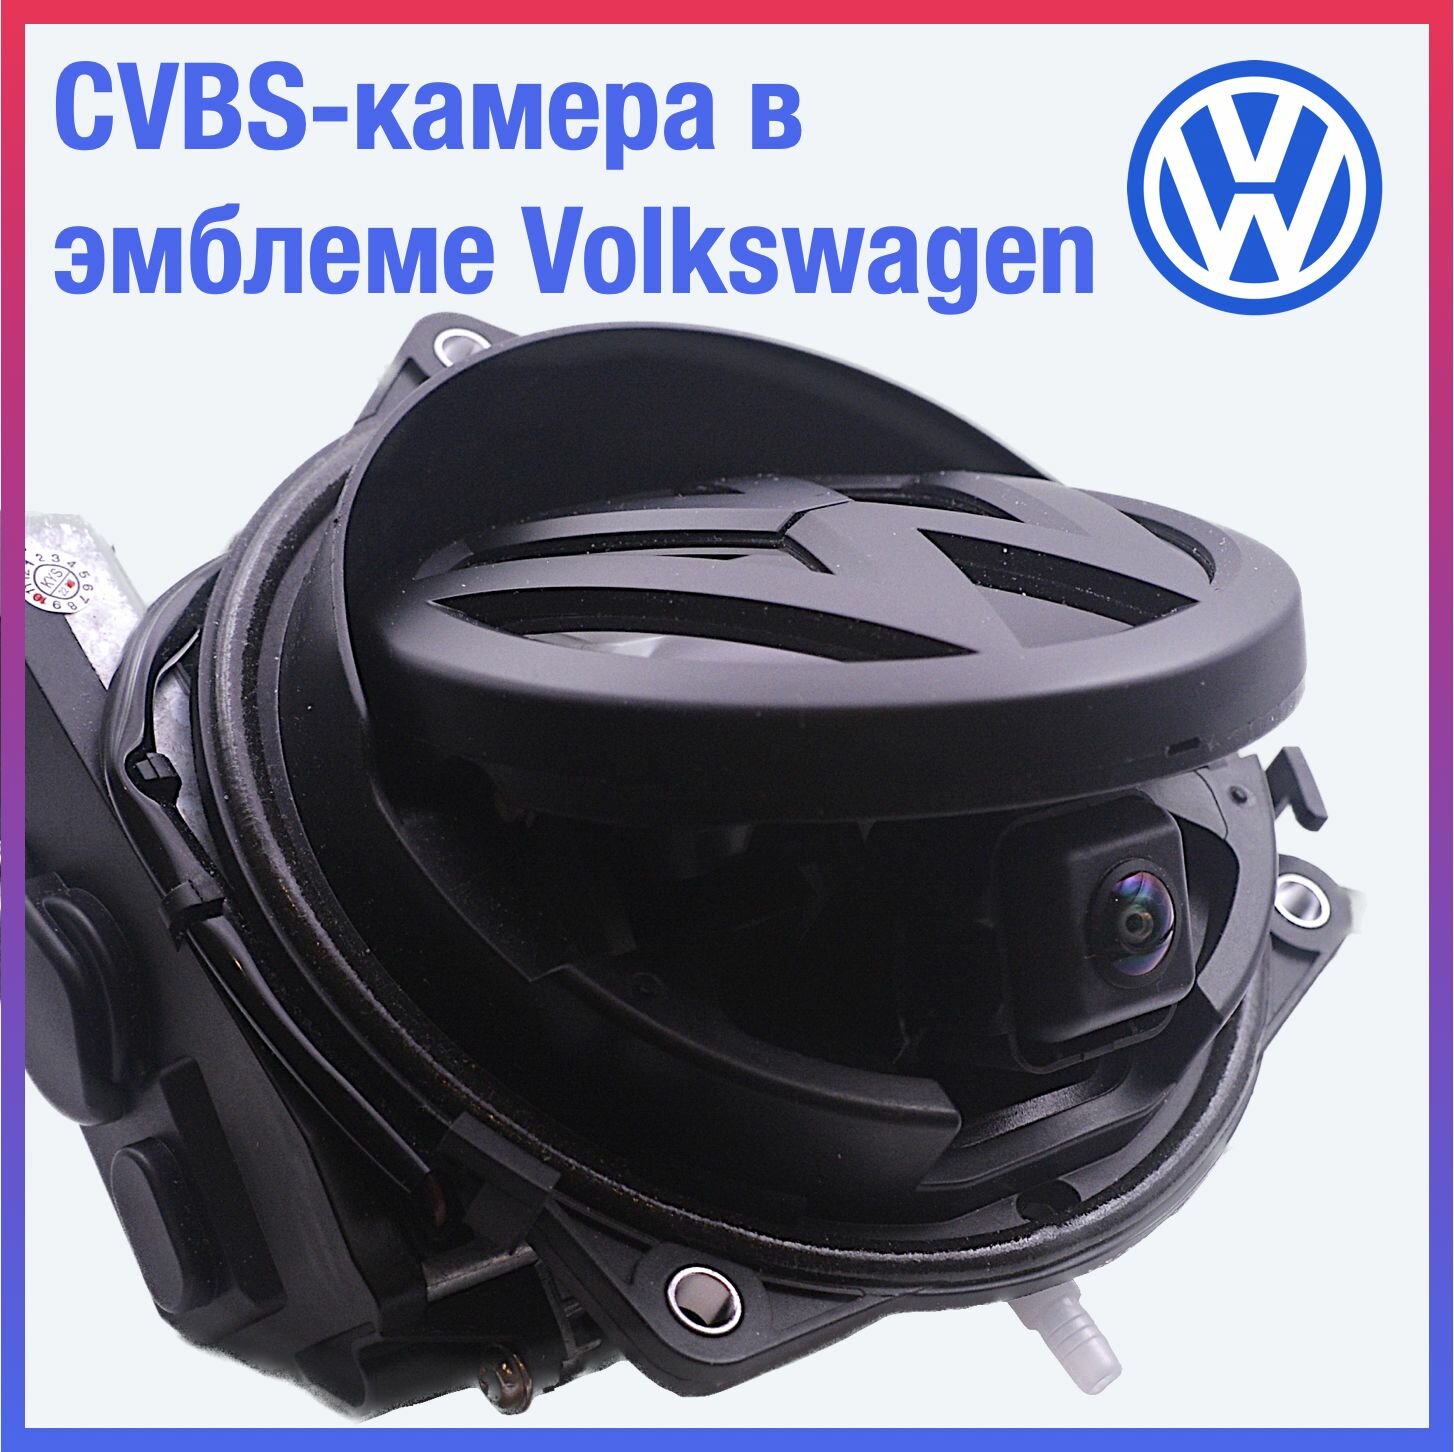 Камера заднего вида в значке чёрной эмблеме для Volkswagen Passat B6/B7/CC/B8, Golf 5/6/8, Polo 6 Liftback, Polo 5 хэтчбек, Beetle, камера 170 градусов в значок (в эмблему)